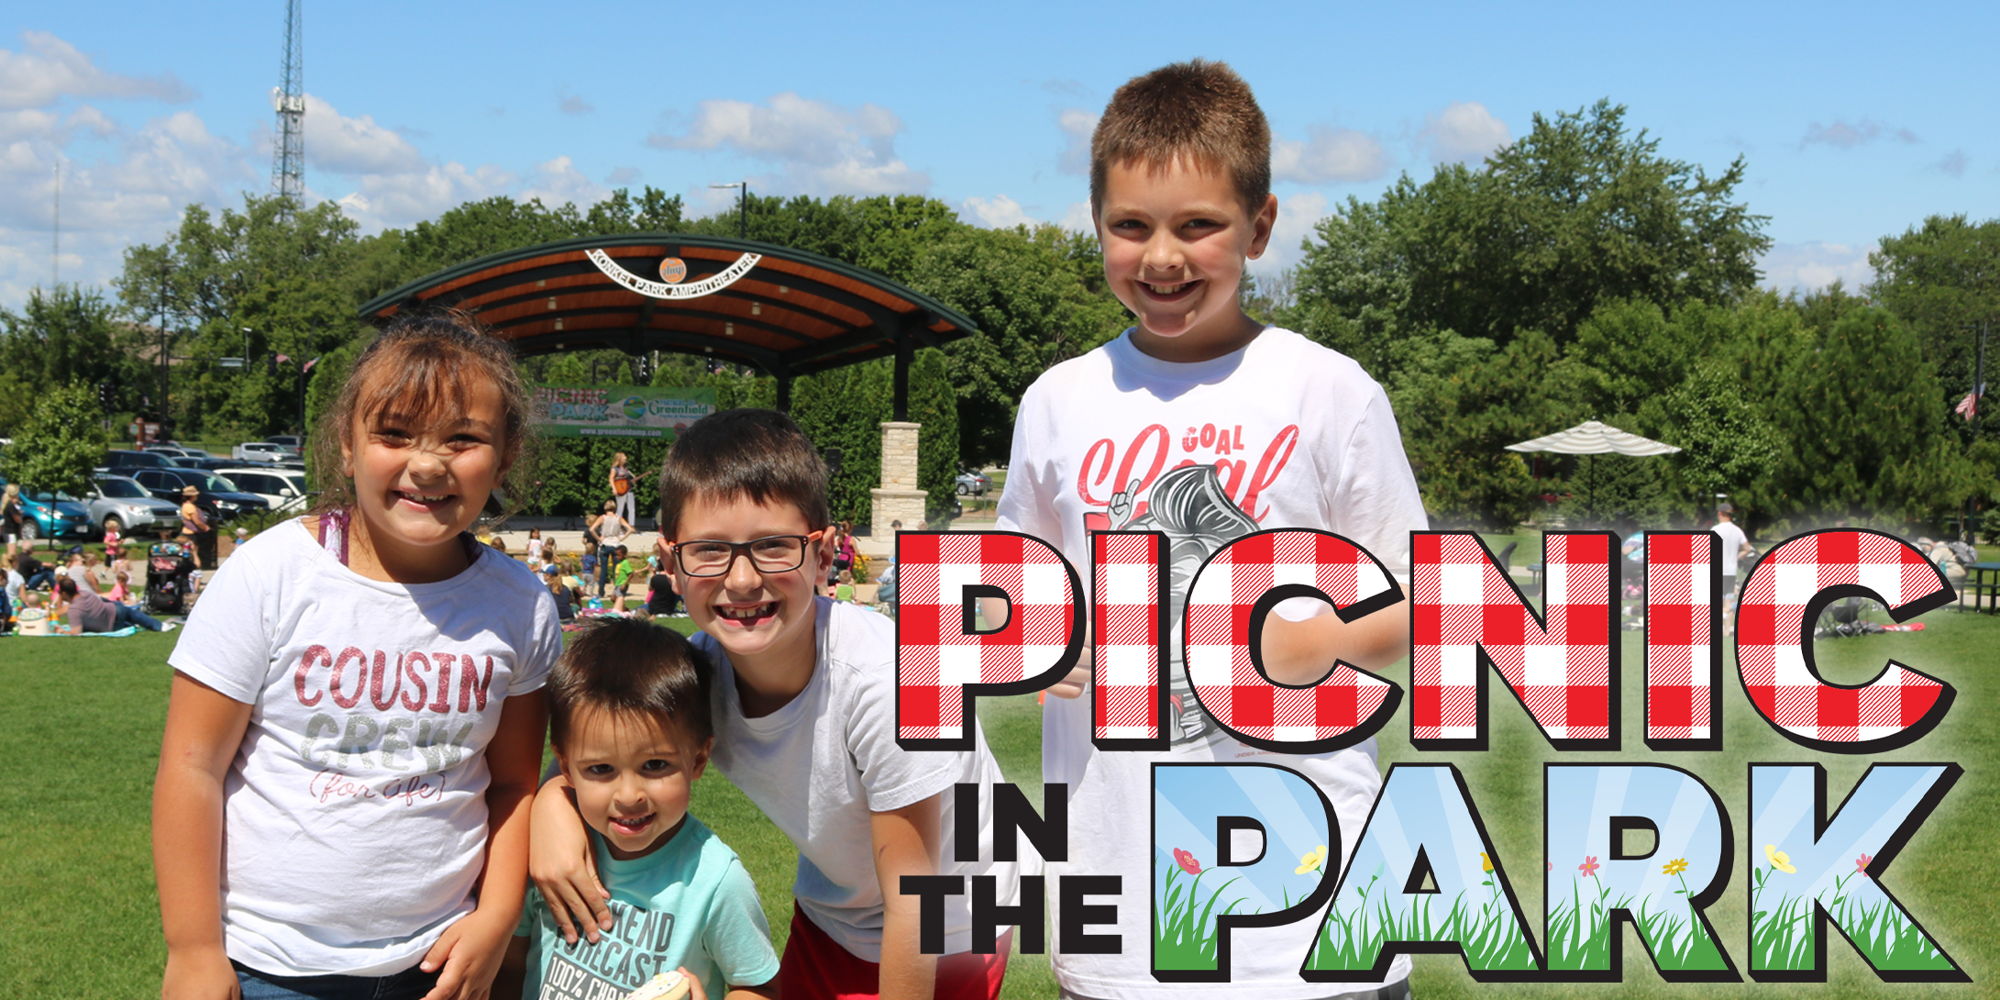 Picnic In The Park - David Landau King of Kids Music promotional image